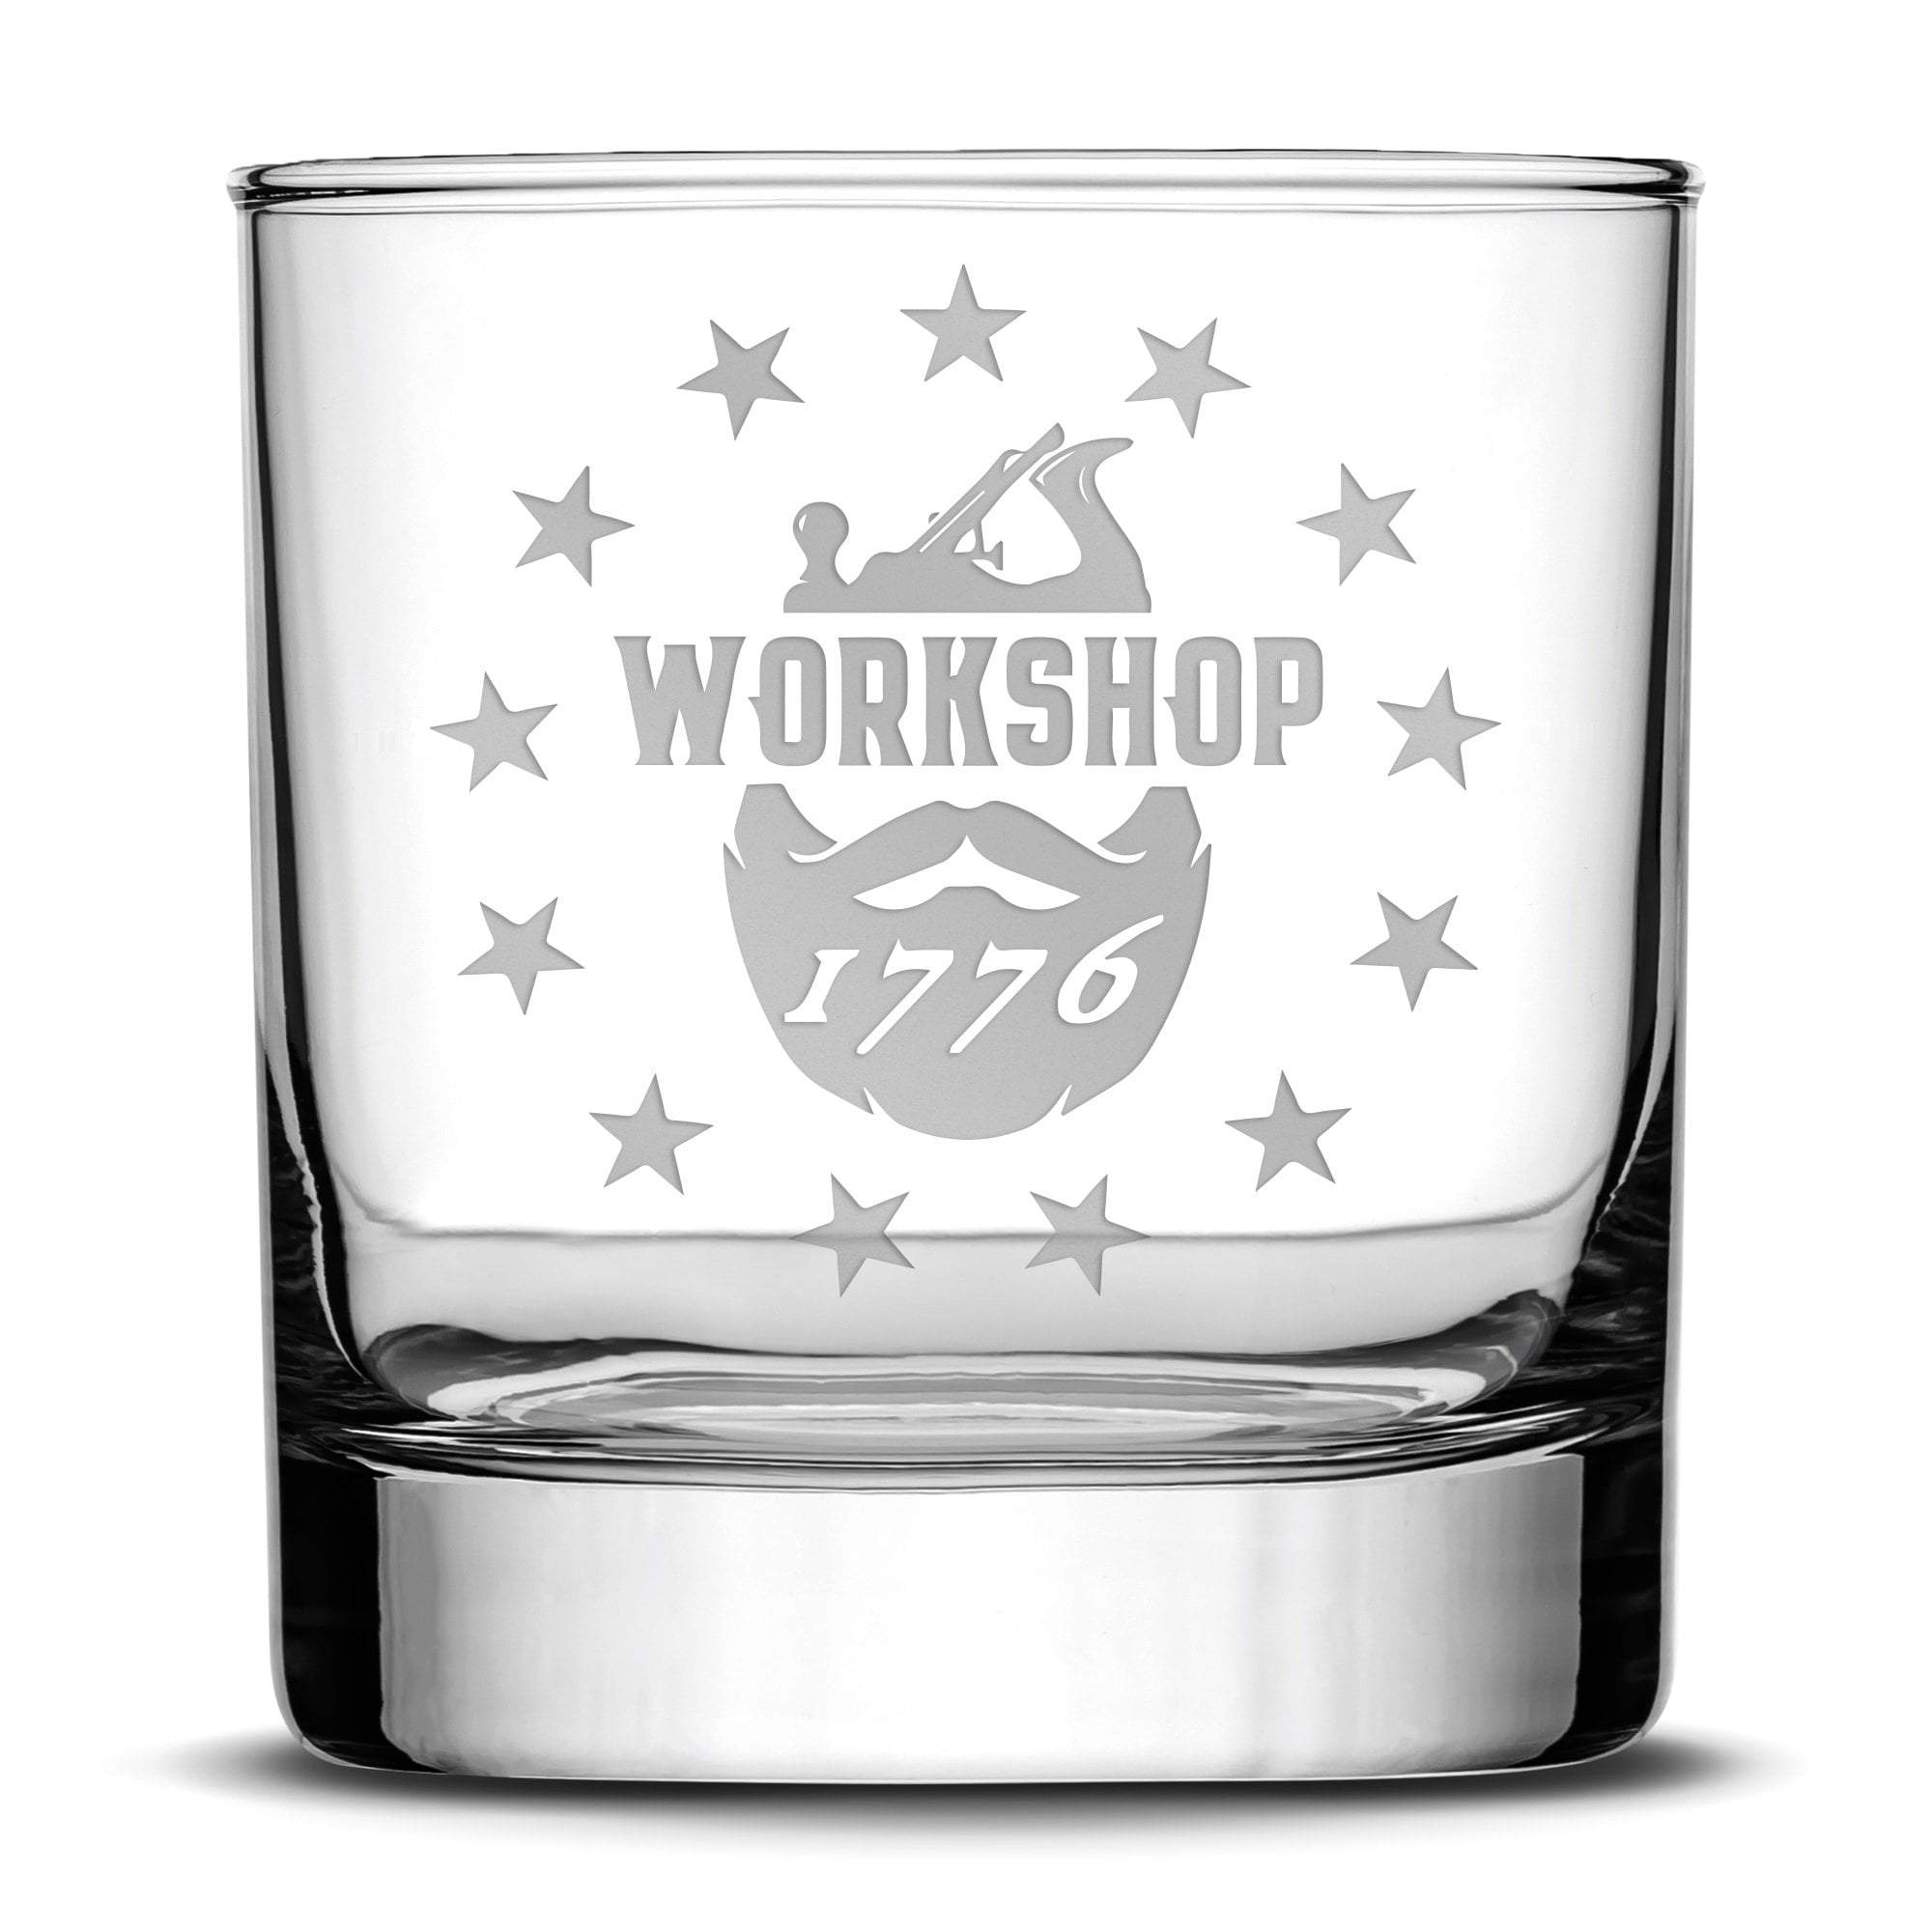 Workshop 1776 Whiskey Rocks Glass, 11oz